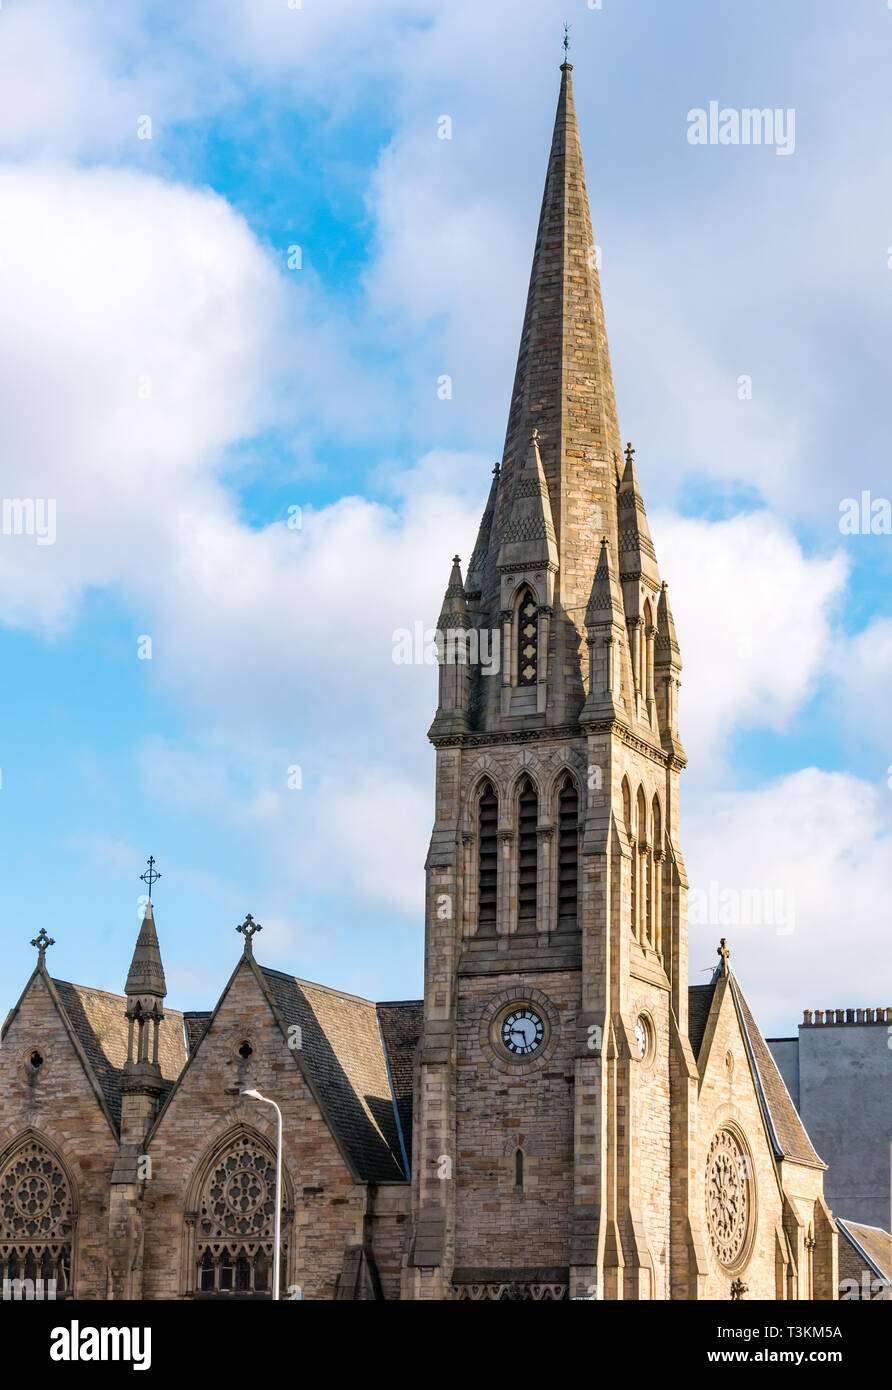 Turm der Viktorianischen Pilrig St Paul's Kirche von Schottland, französischen gotischen Stil durch Peddie & Kinnear, Leith Walk, Edinburgh, Schottland, Großbritannien Stockfoto